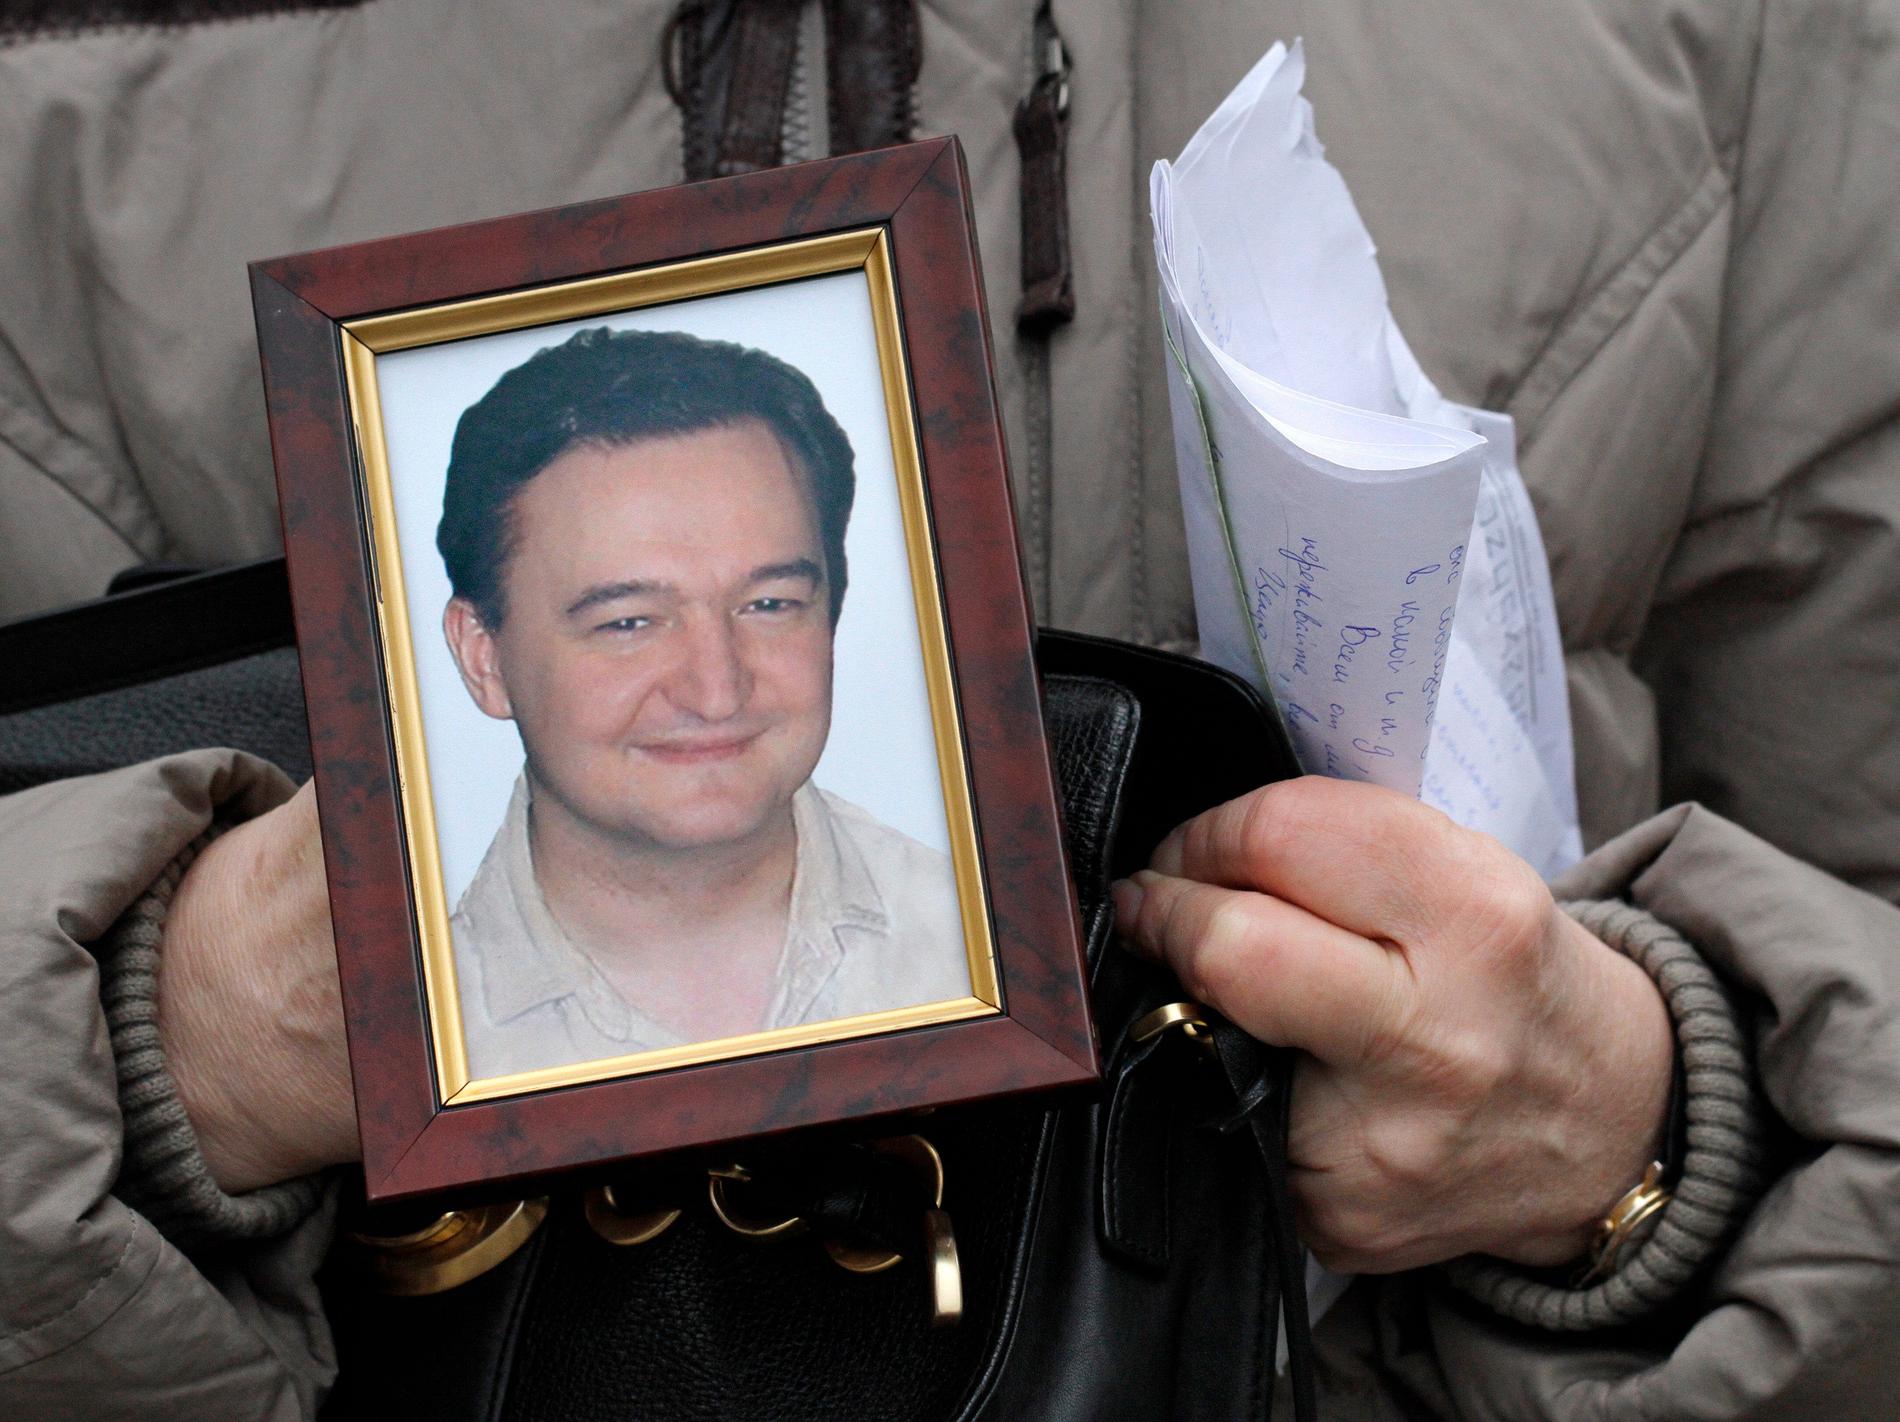 Den ryske advokaten Sergej Magnitskij, död i Butyrka-fängelset i Moskva 2009, har blivit en symbol för kampen mot övergrepp och korruption. Arkivfoto.